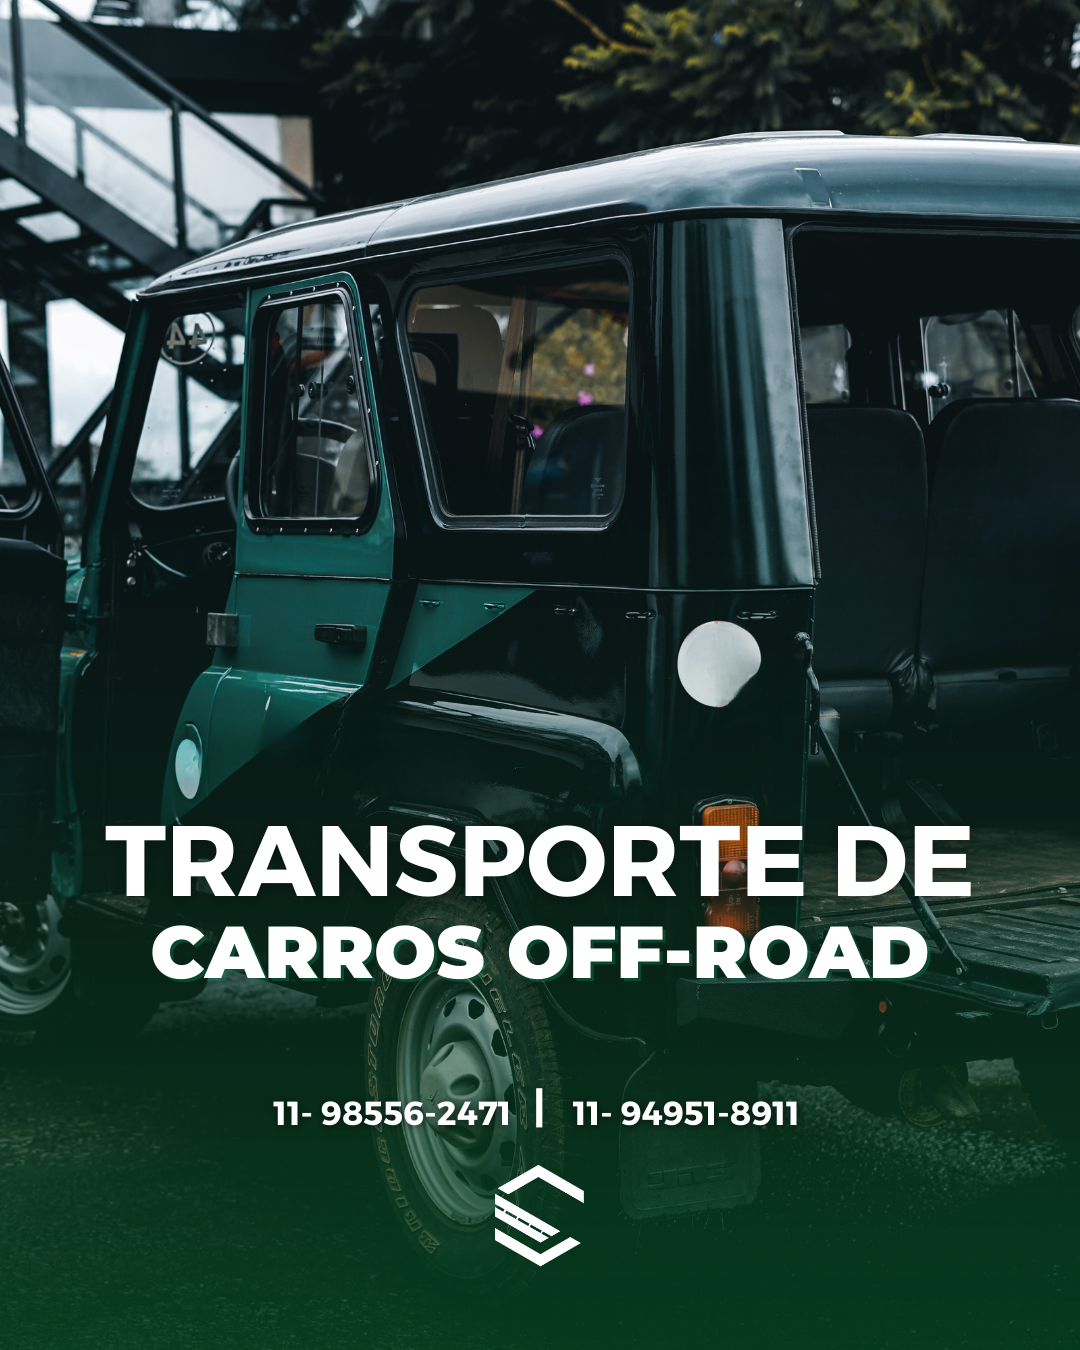 Imagem TRANSPORTE DE CARROS OFF-ROAD